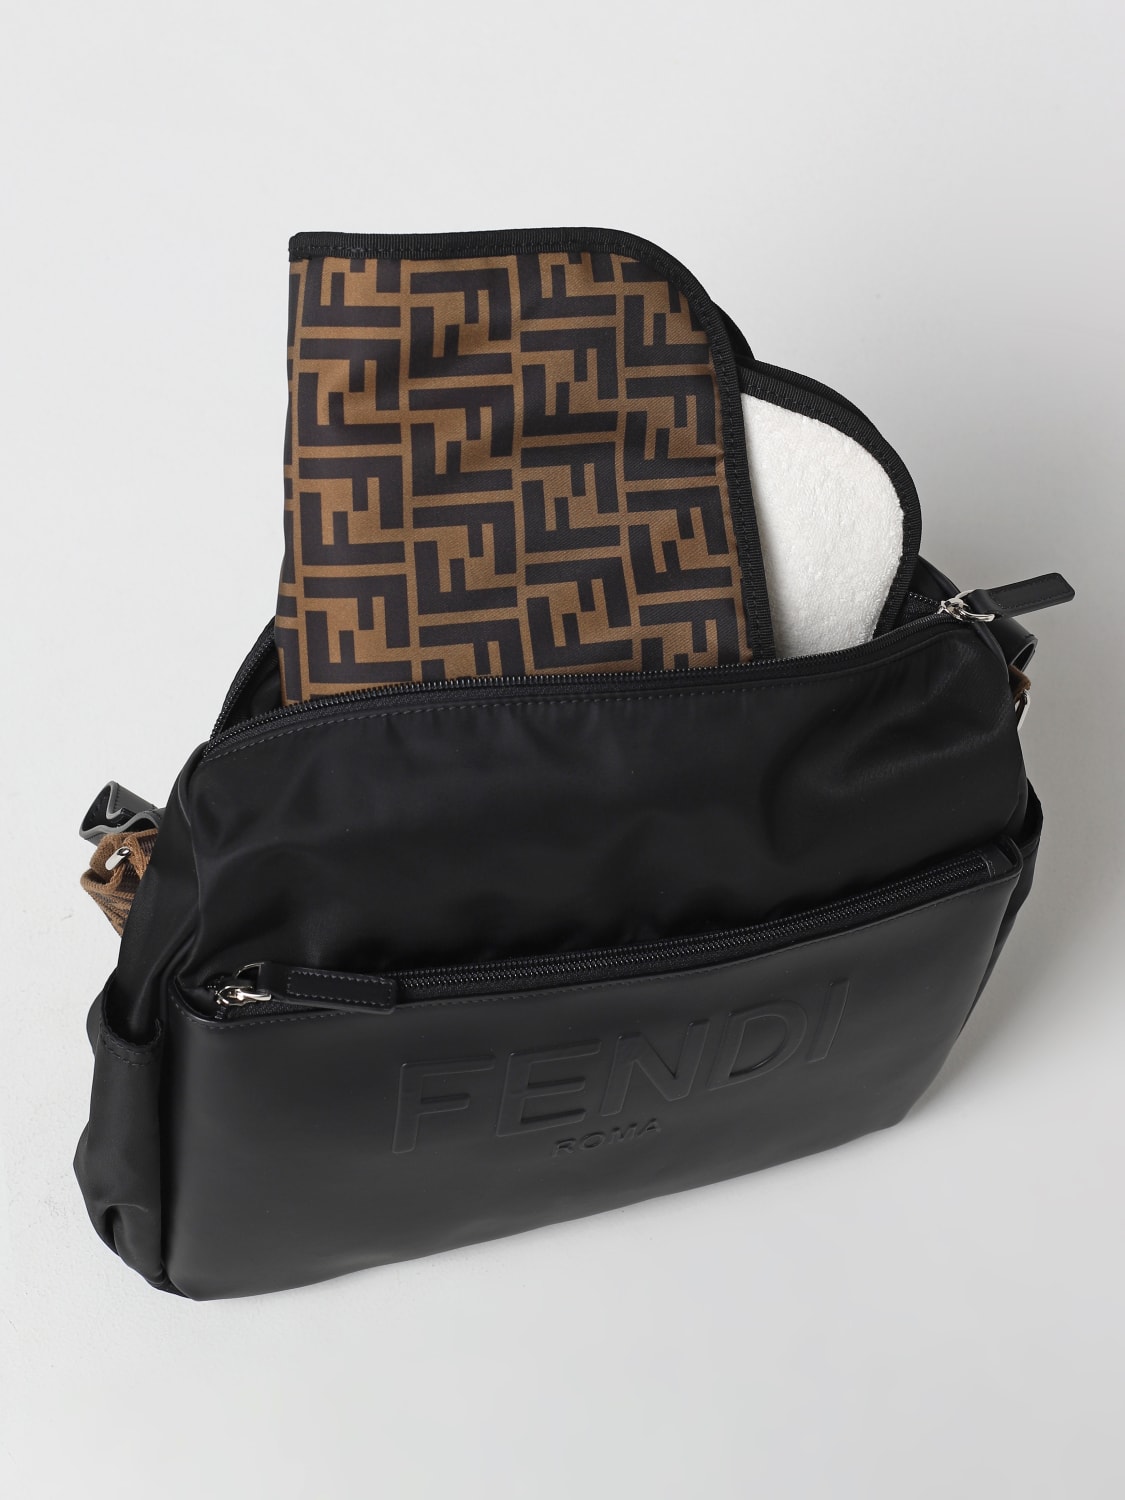 FENDI KIDS: Fendi nylon diaper bag - Black